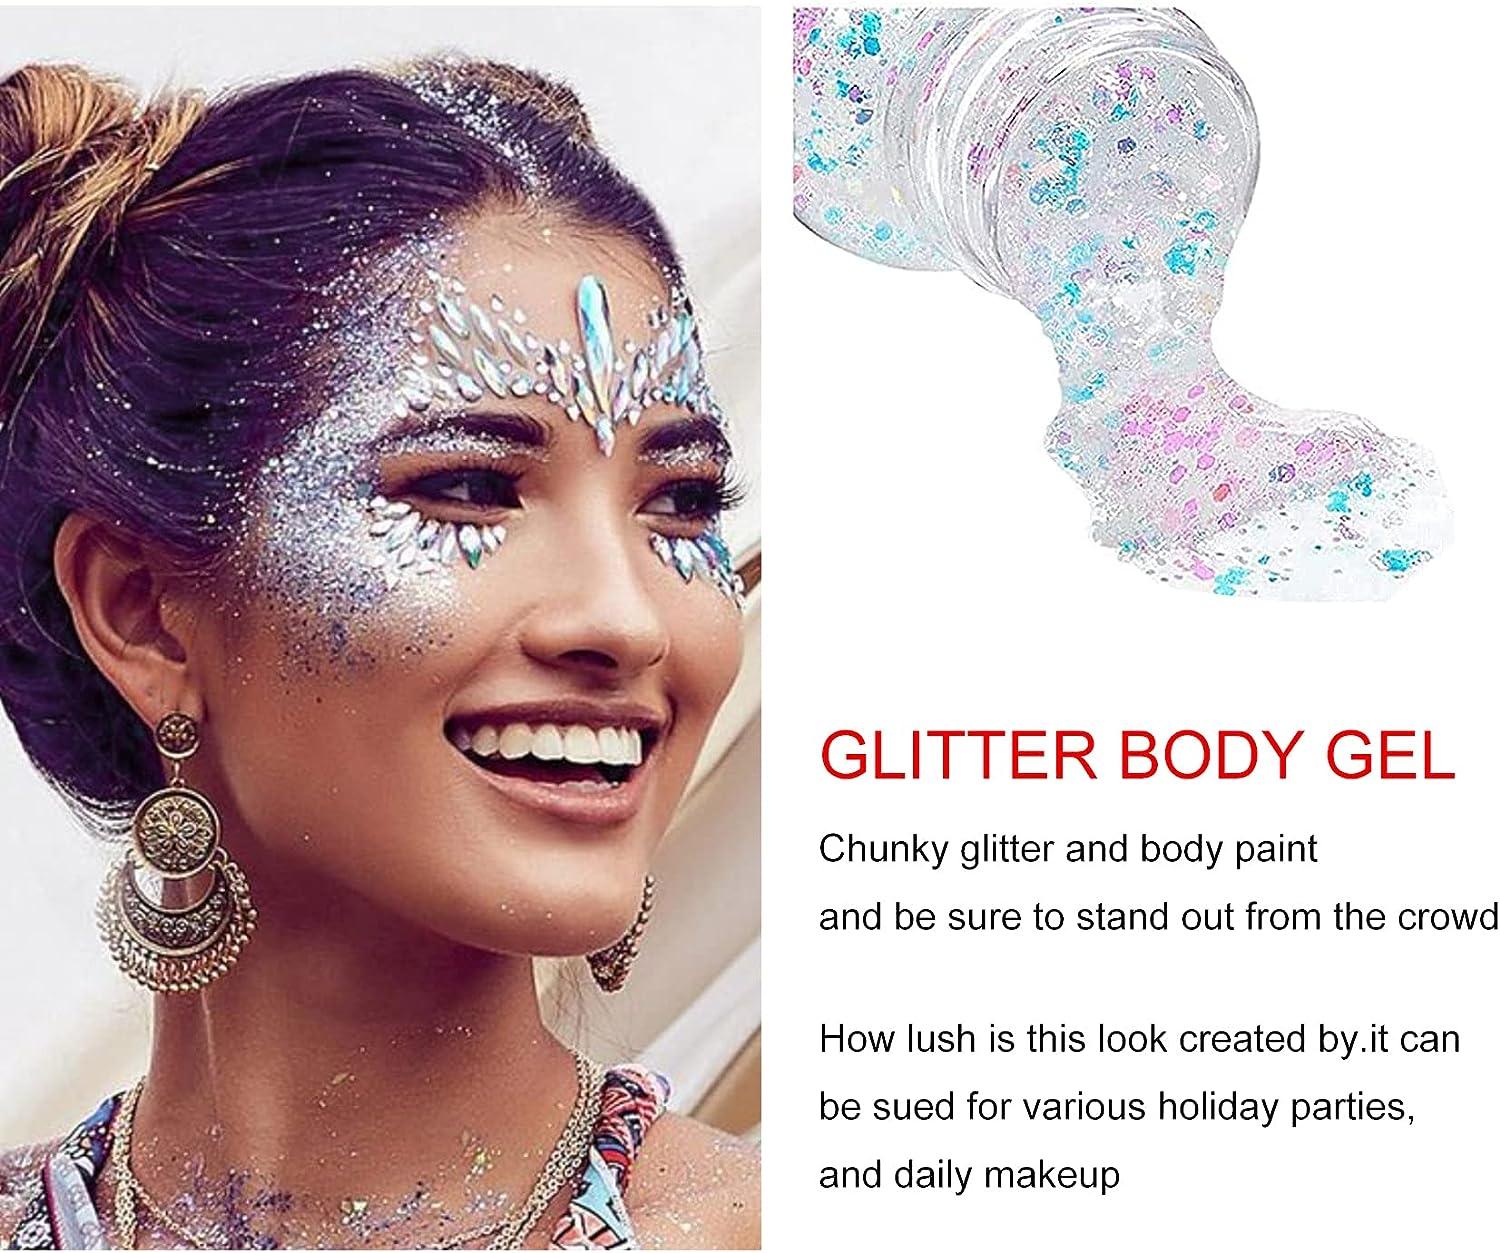  Body Glitter Gel Face Glitter for Body, Face, Eye